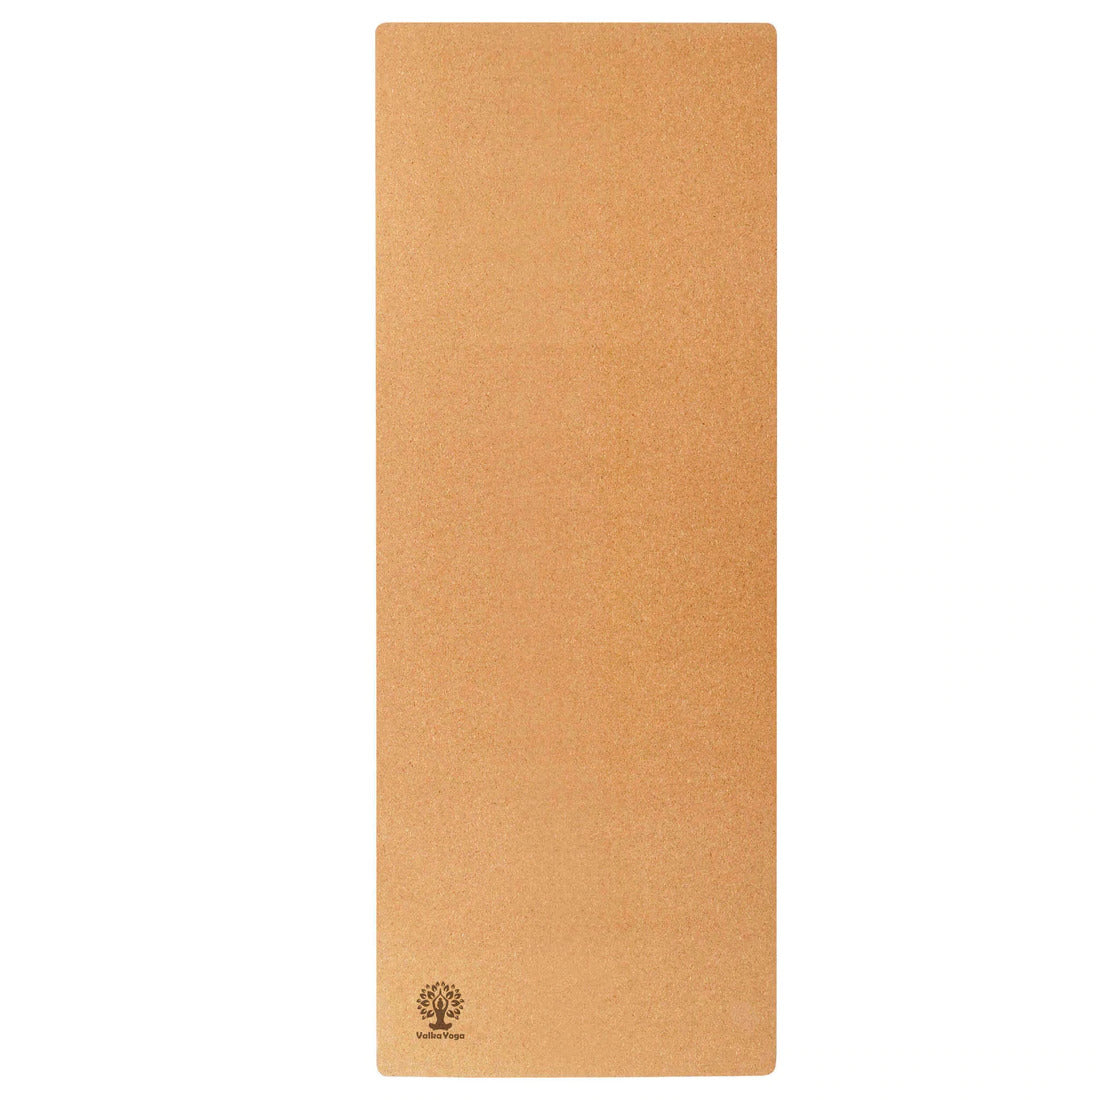 Valka Grand Cork 4.5mm Yoga Mat - unfurled | Eco Yoga Store